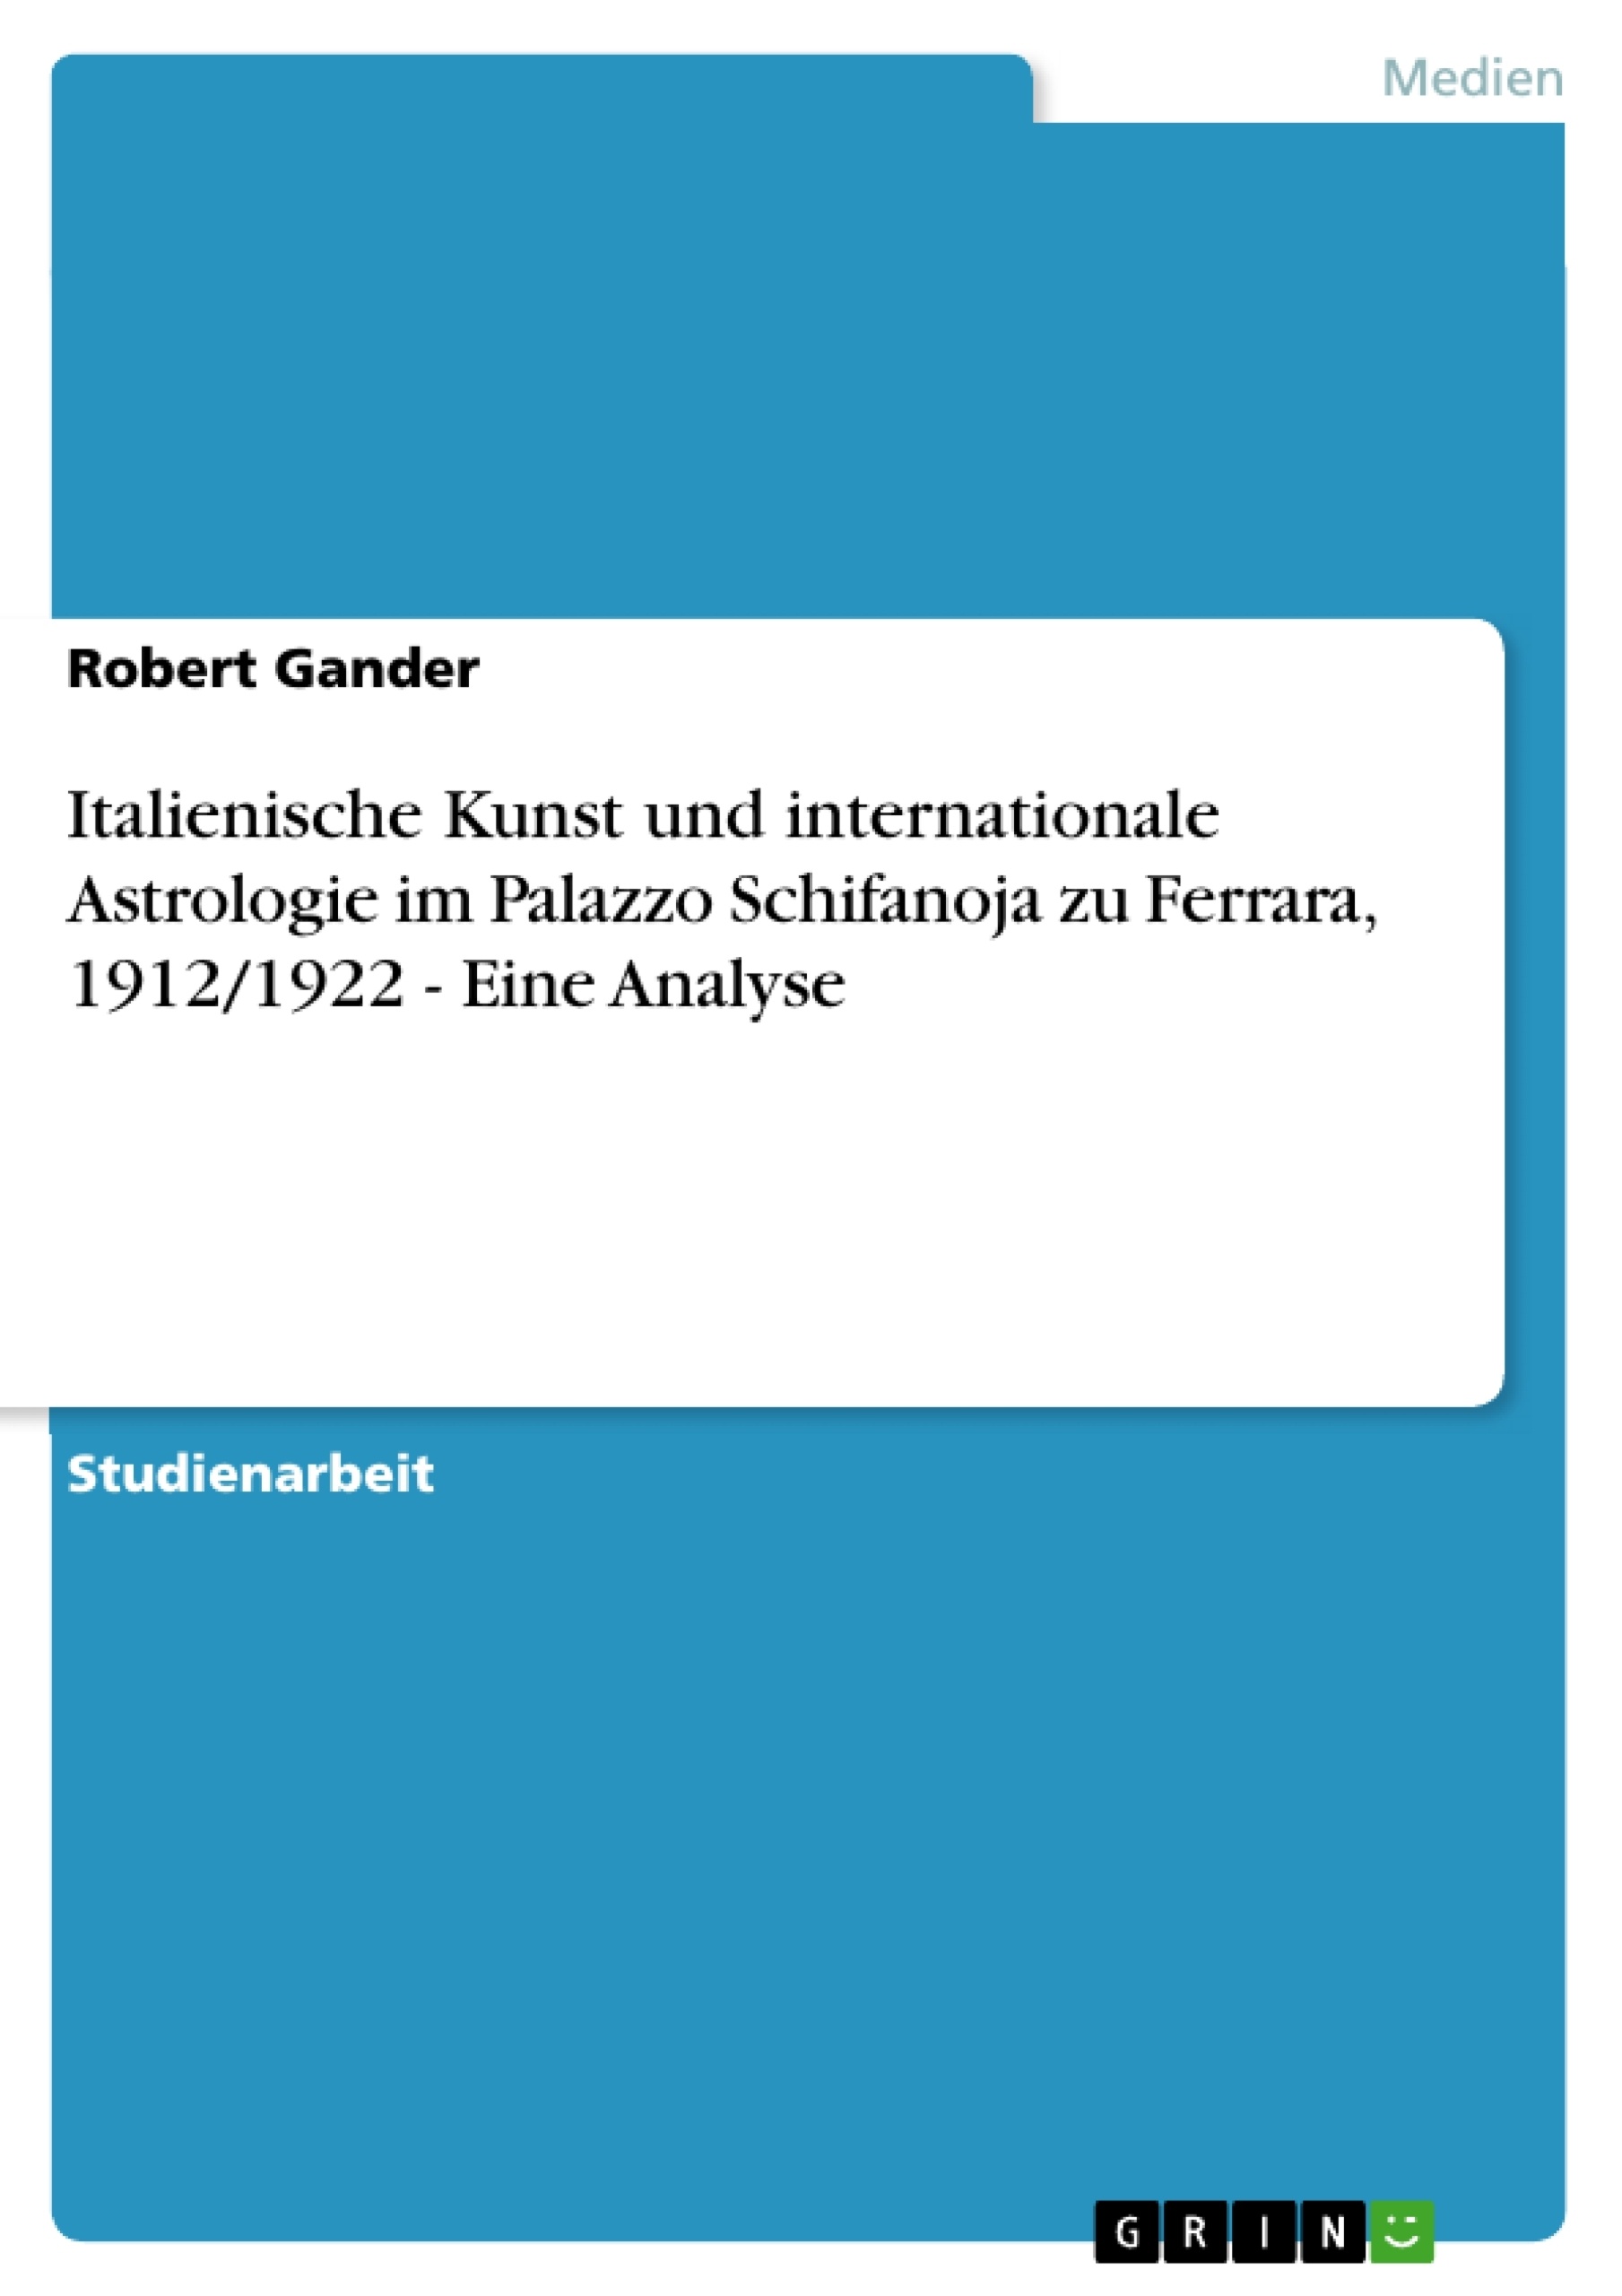 Titre: Italienische Kunst und internationale Astrologie im Palazzo Schifanoja zu Ferrara, 1912/1922 - Eine Analyse